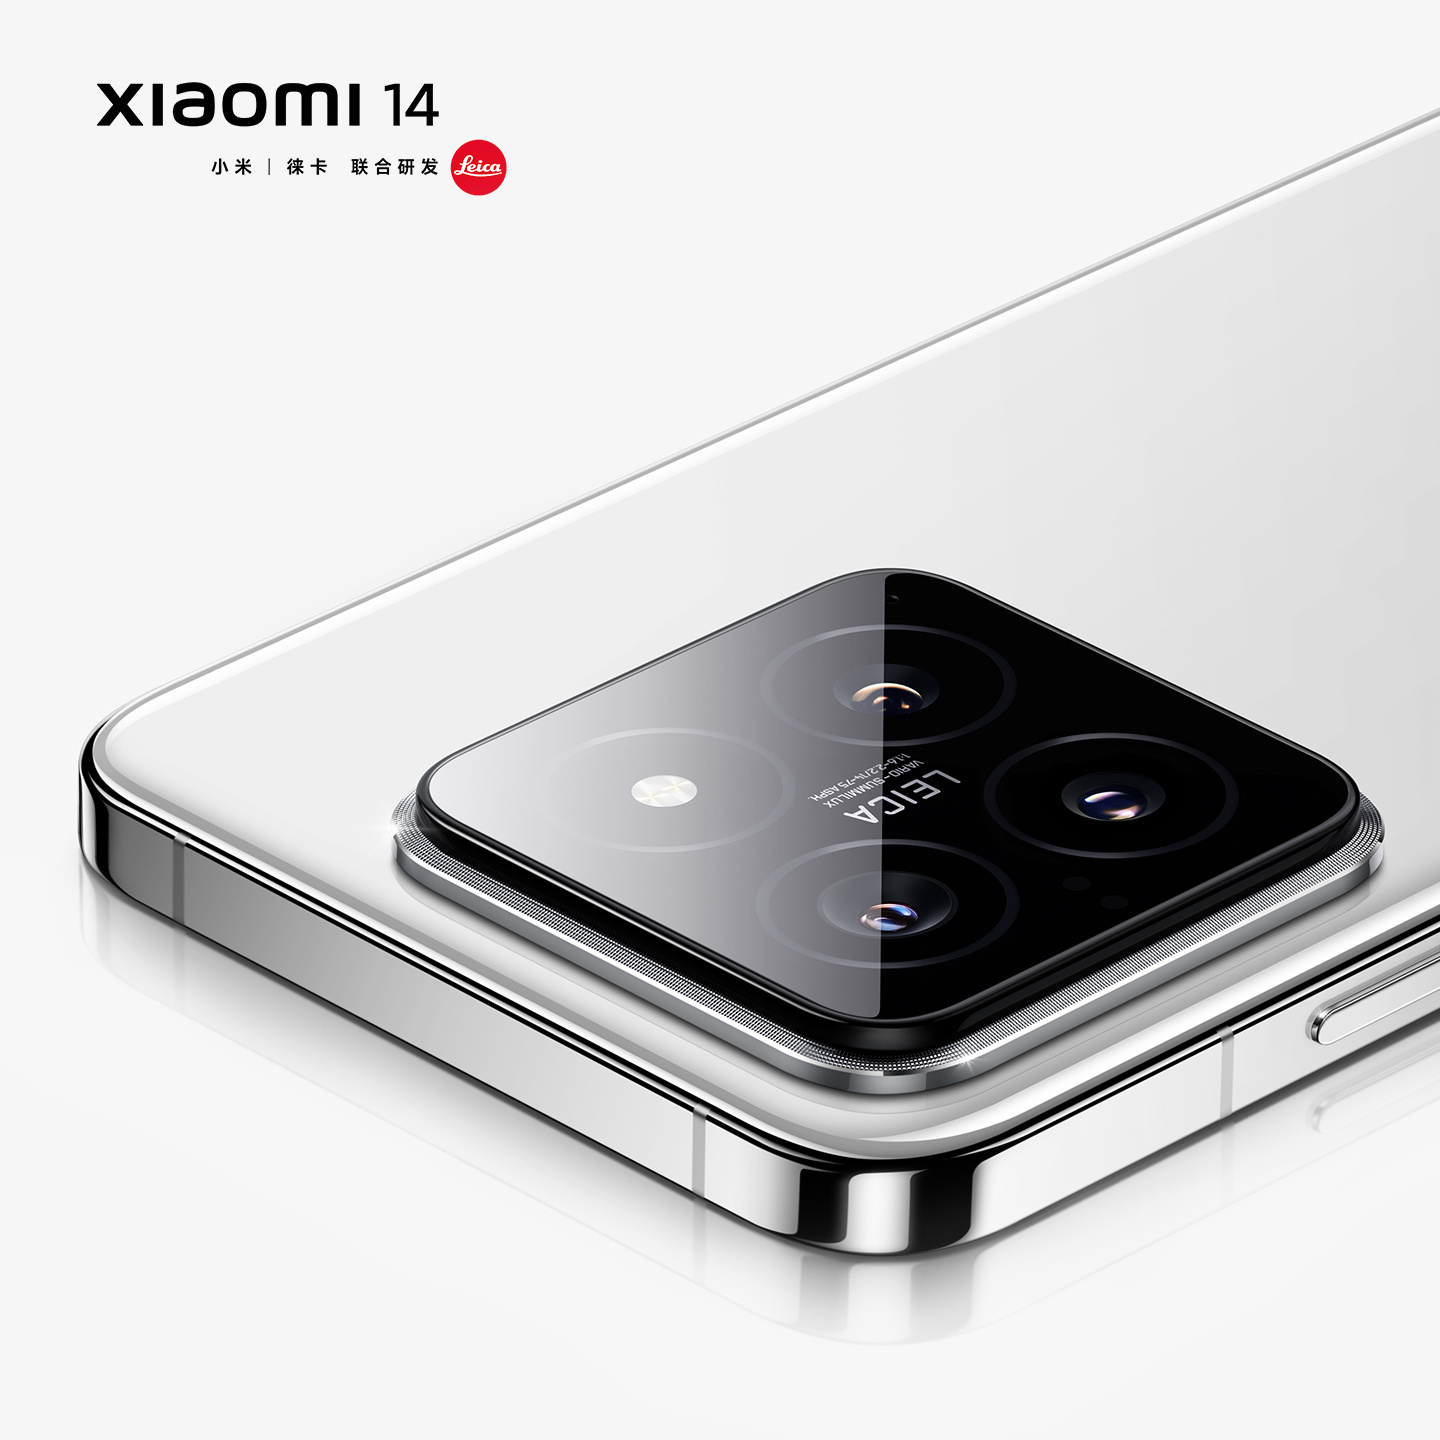 Chính thức: Xiaomi 14 ra mắt ngày 26/10, là smartphone đầu tiên dùng chip Snapdragon 8 Gen 3 - Ảnh 1.